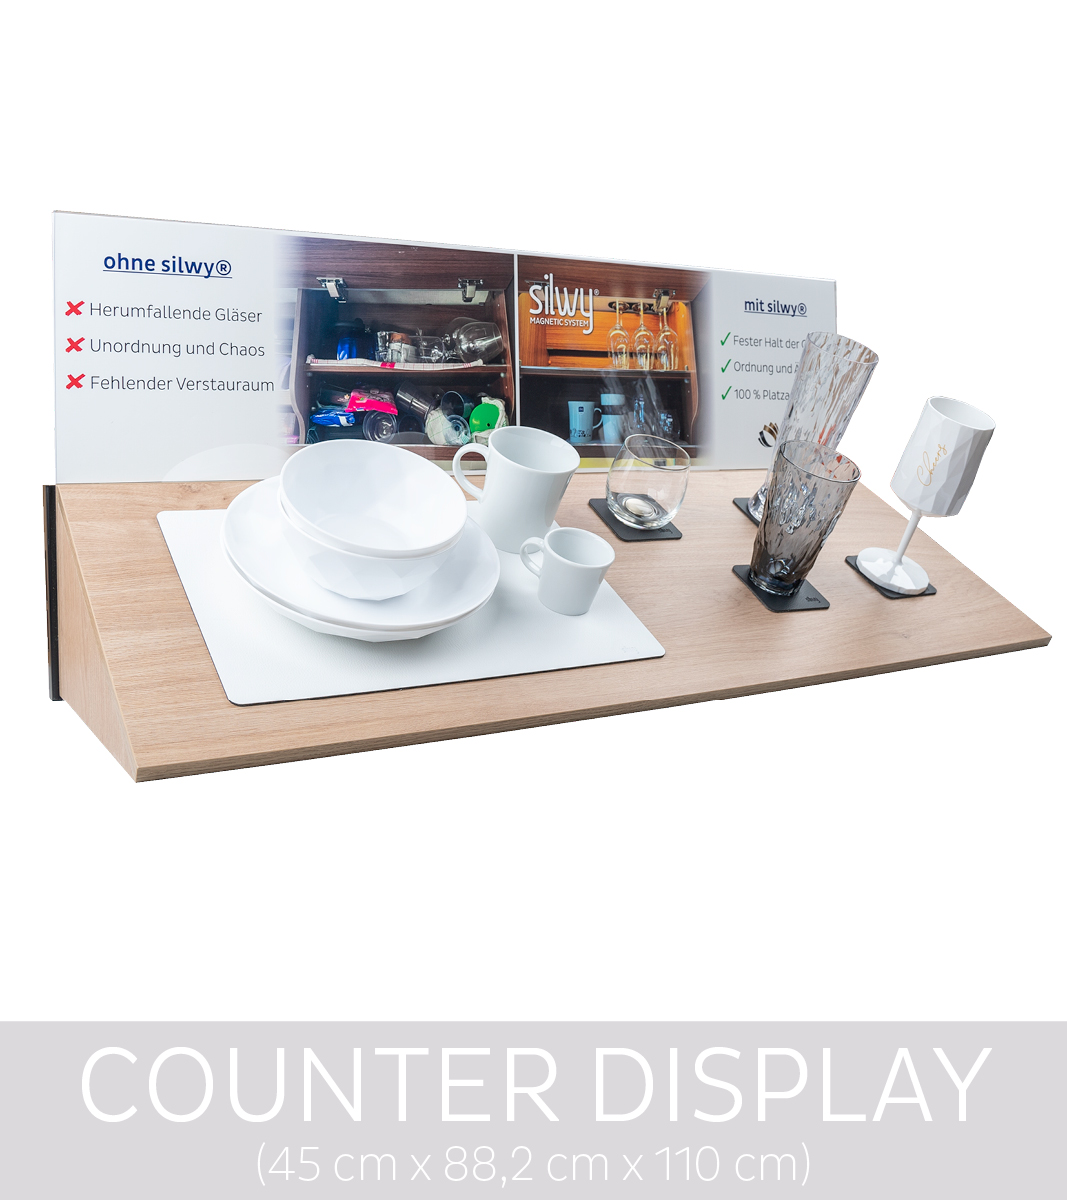 POS-Displays-Counter